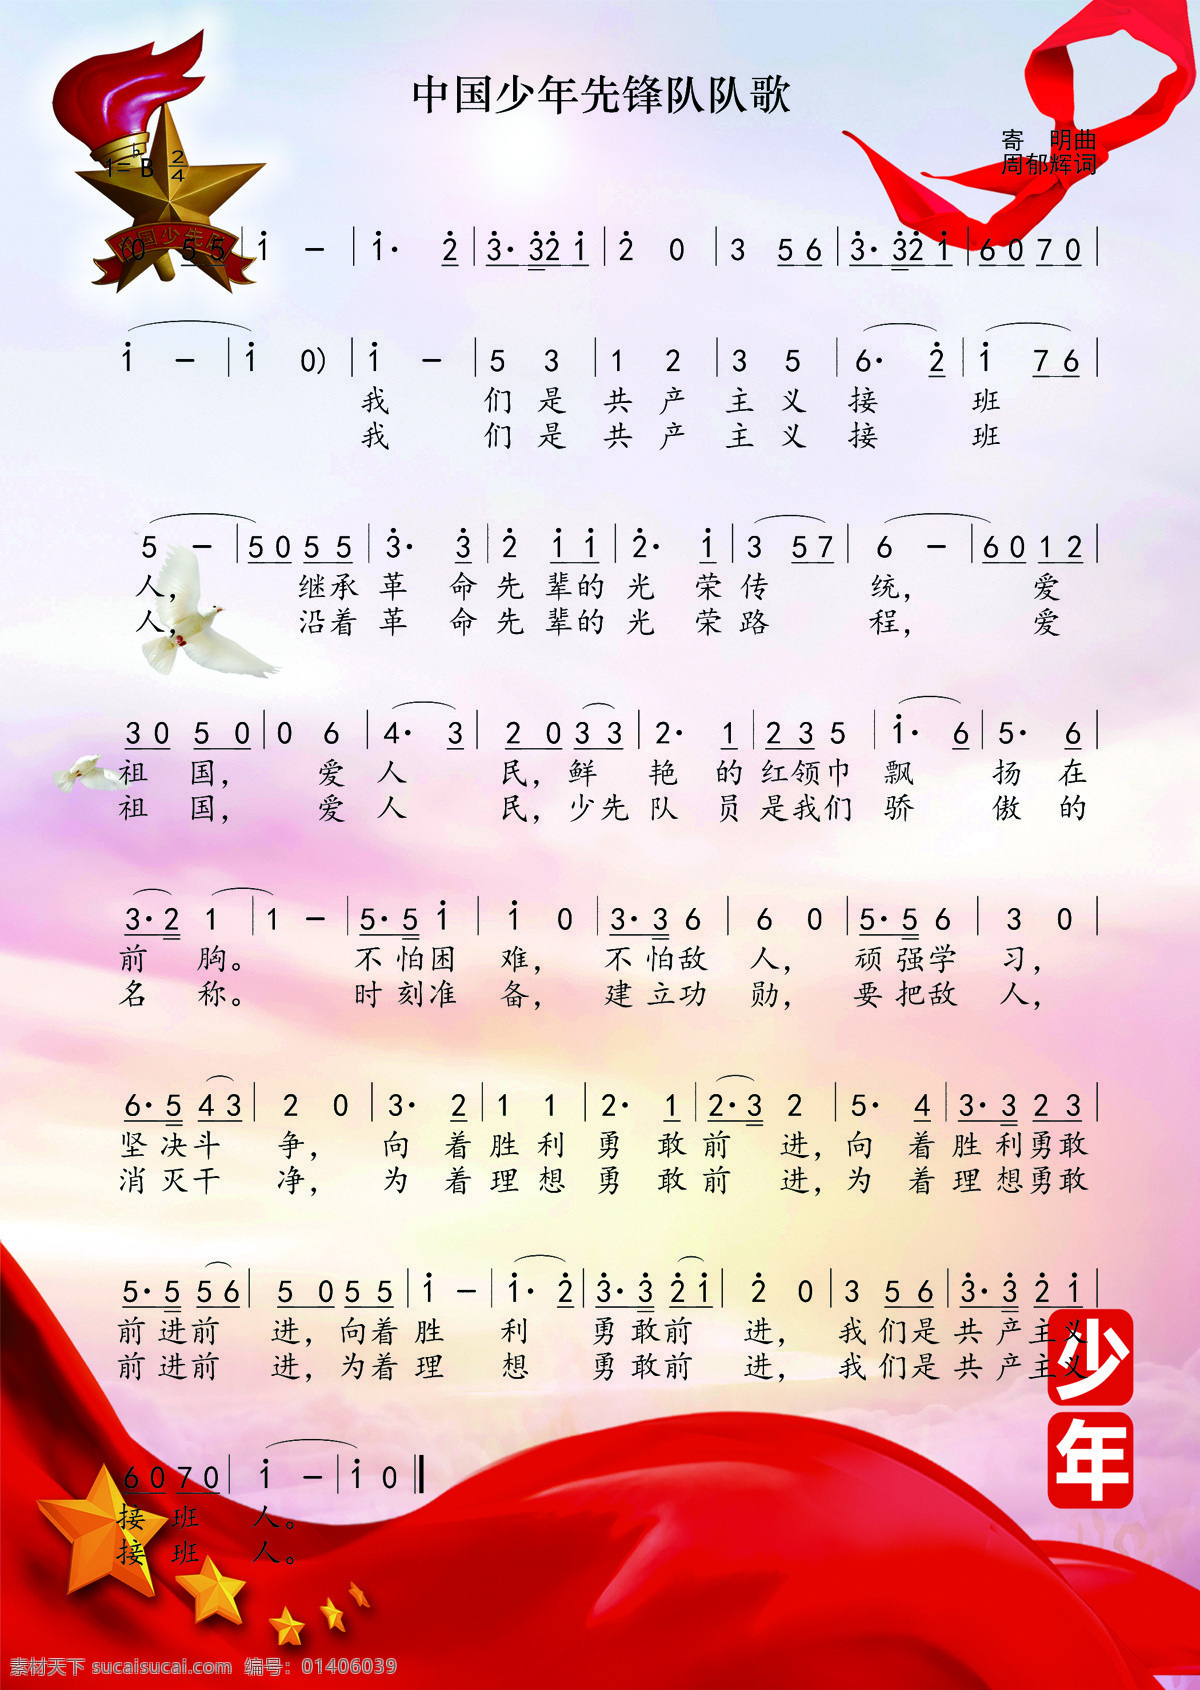 中国少年先锋队 队歌 中国 少先队 简谱 共享 文化艺术 舞蹈音乐